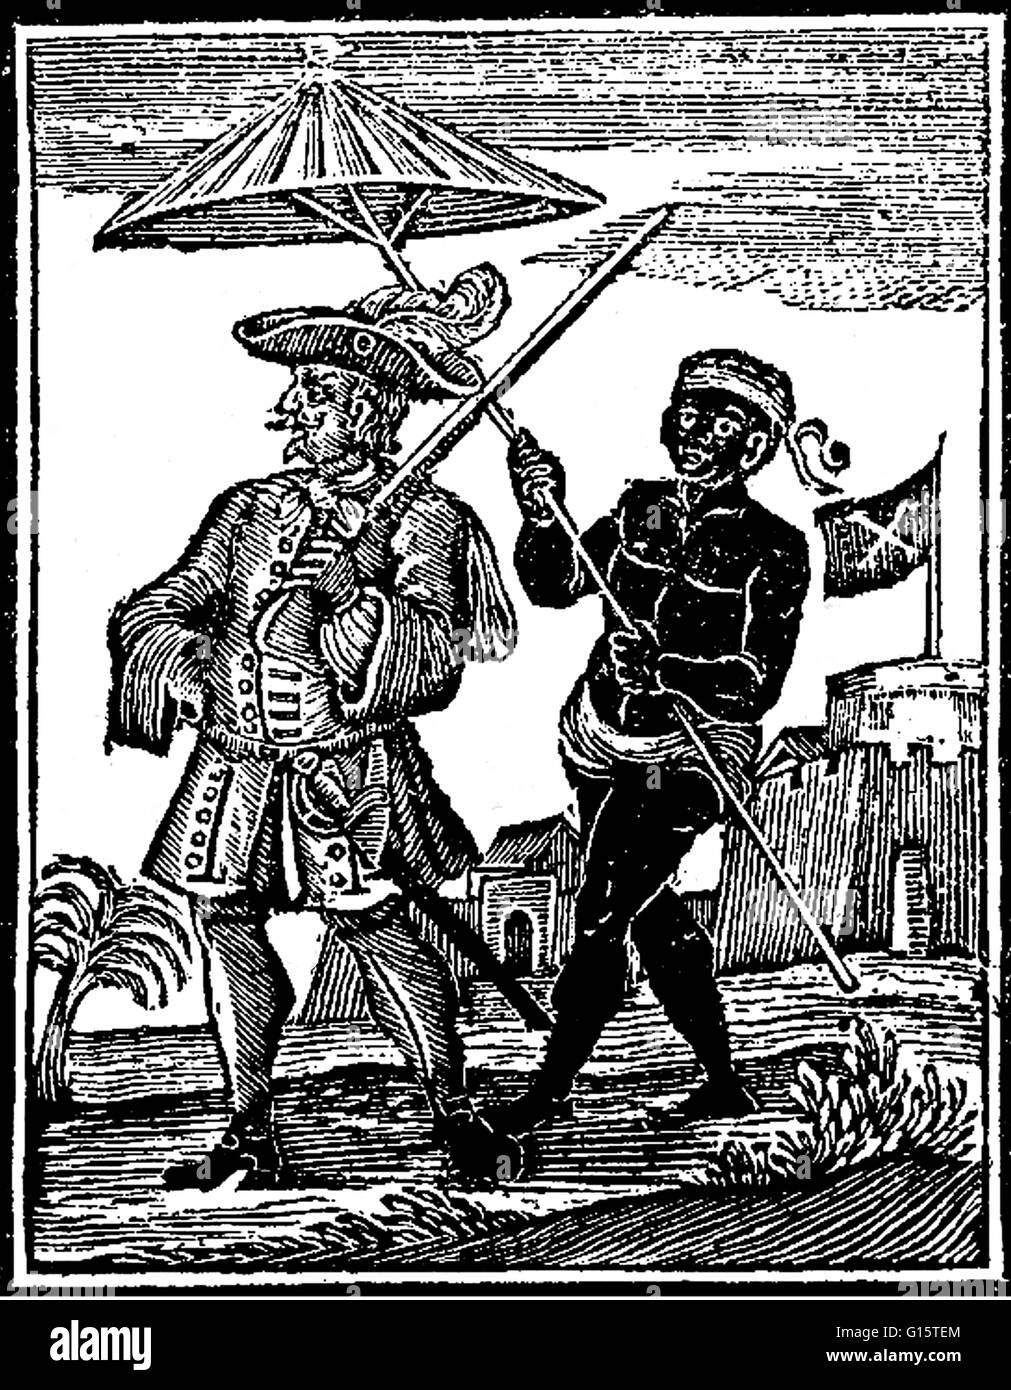 Henry ogni (Agosto 23, 1659 - dopo il 1696) era un pirata inglese che gestiva negli oceani Atlantico e Indiano nel mid-1690s. Egli è stato uno dei pochi grandi capitani pirata al ritiro con il suo bottino senza essere arrestate o uccise in battaglia. Egli è stato uno dei Foto Stock